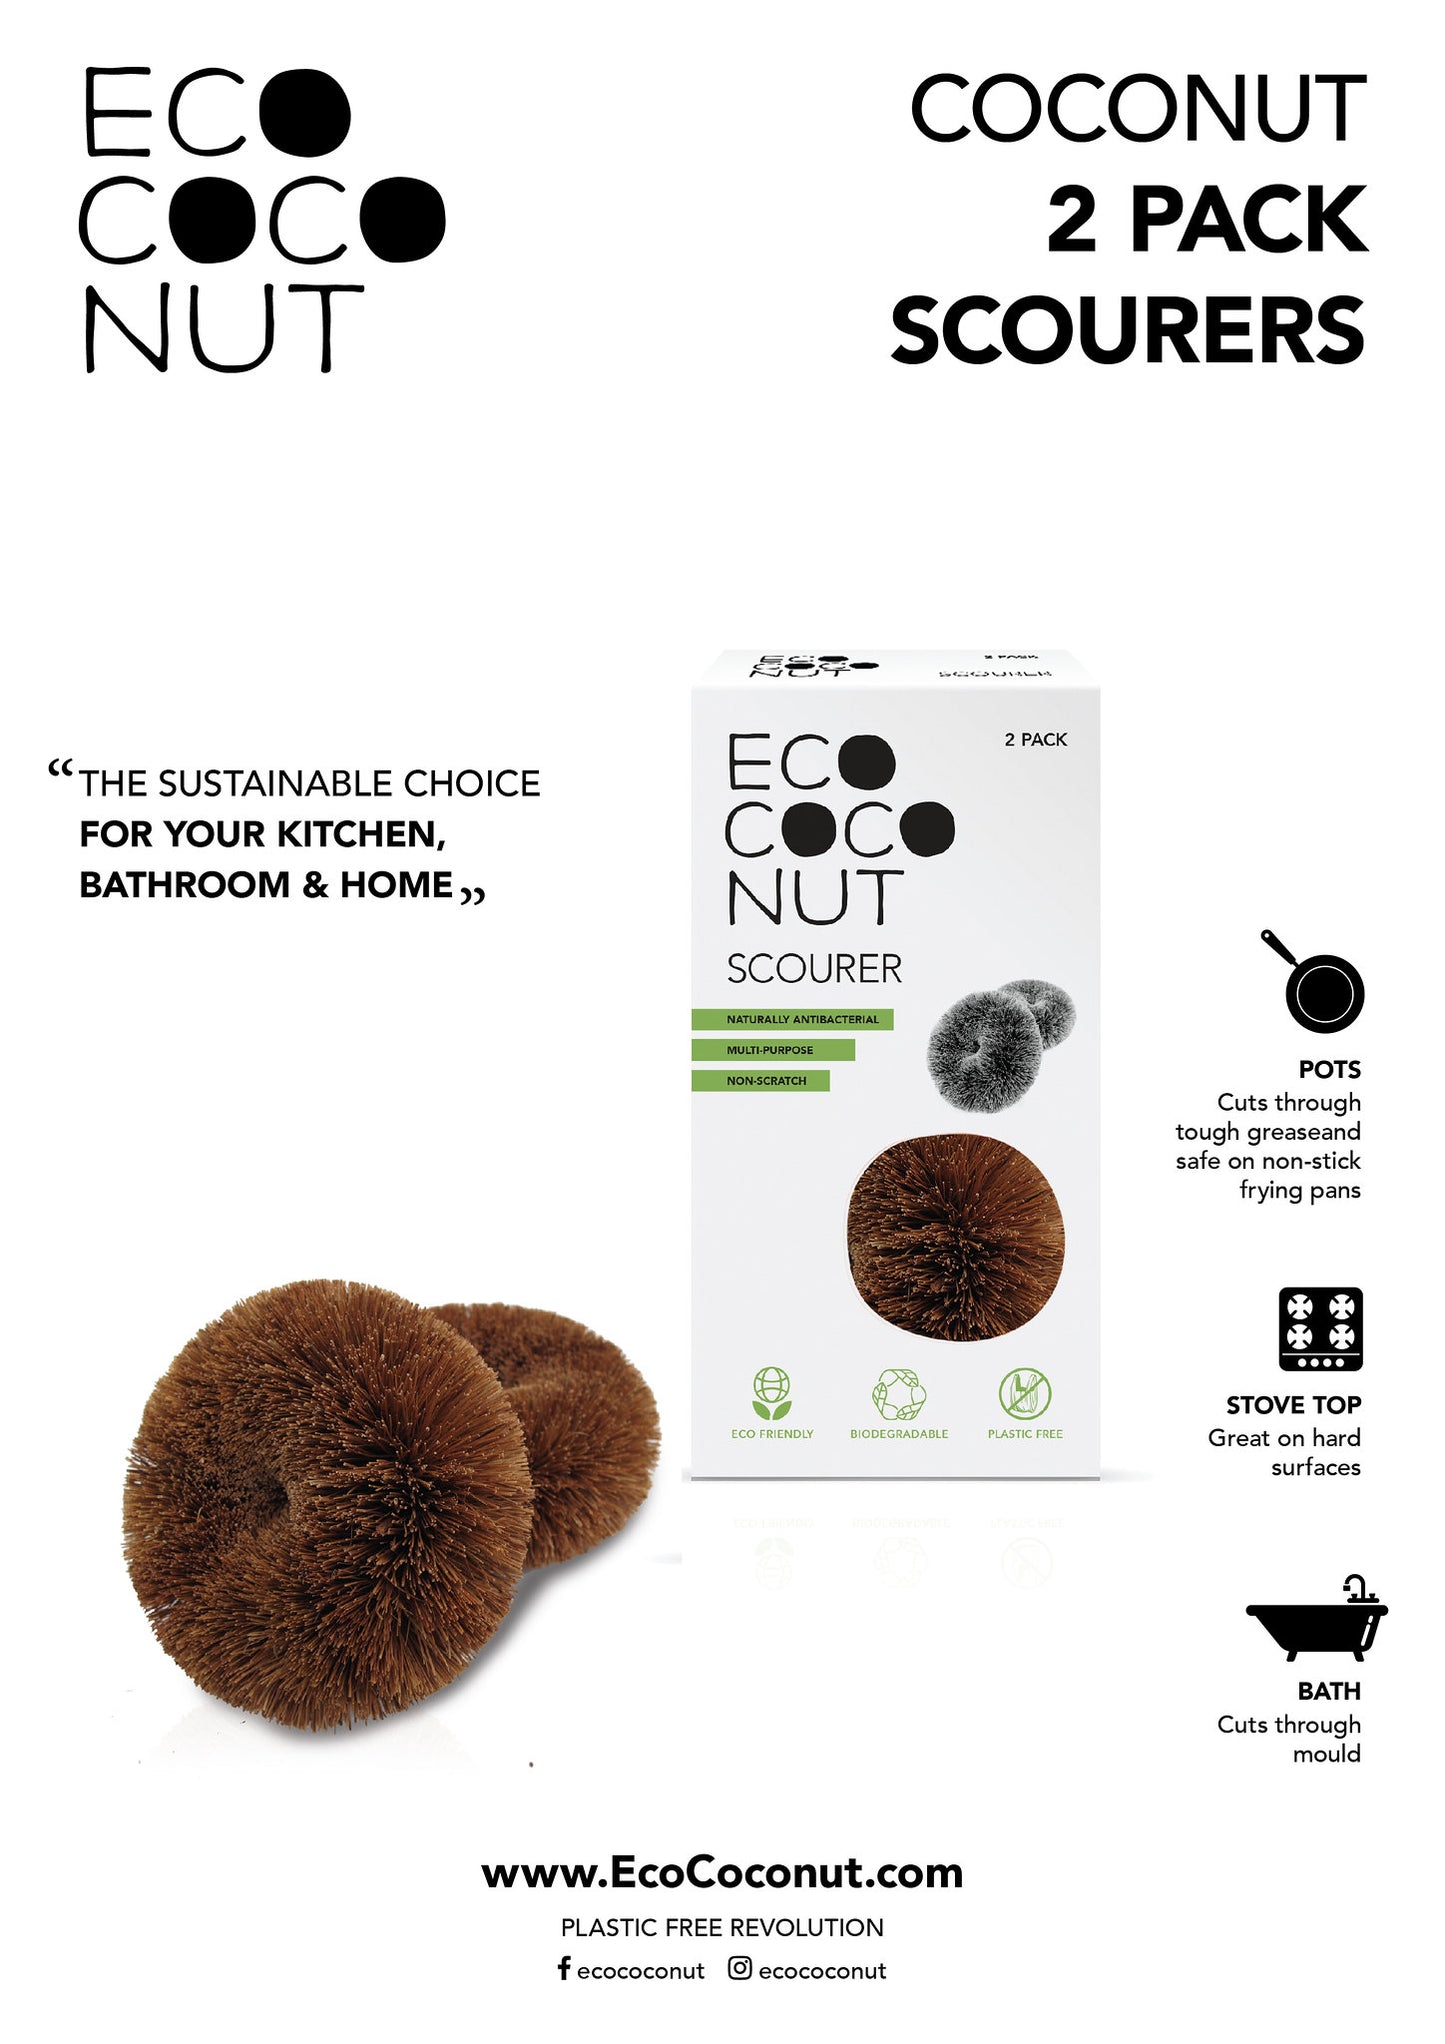 Scourer - 2 pack